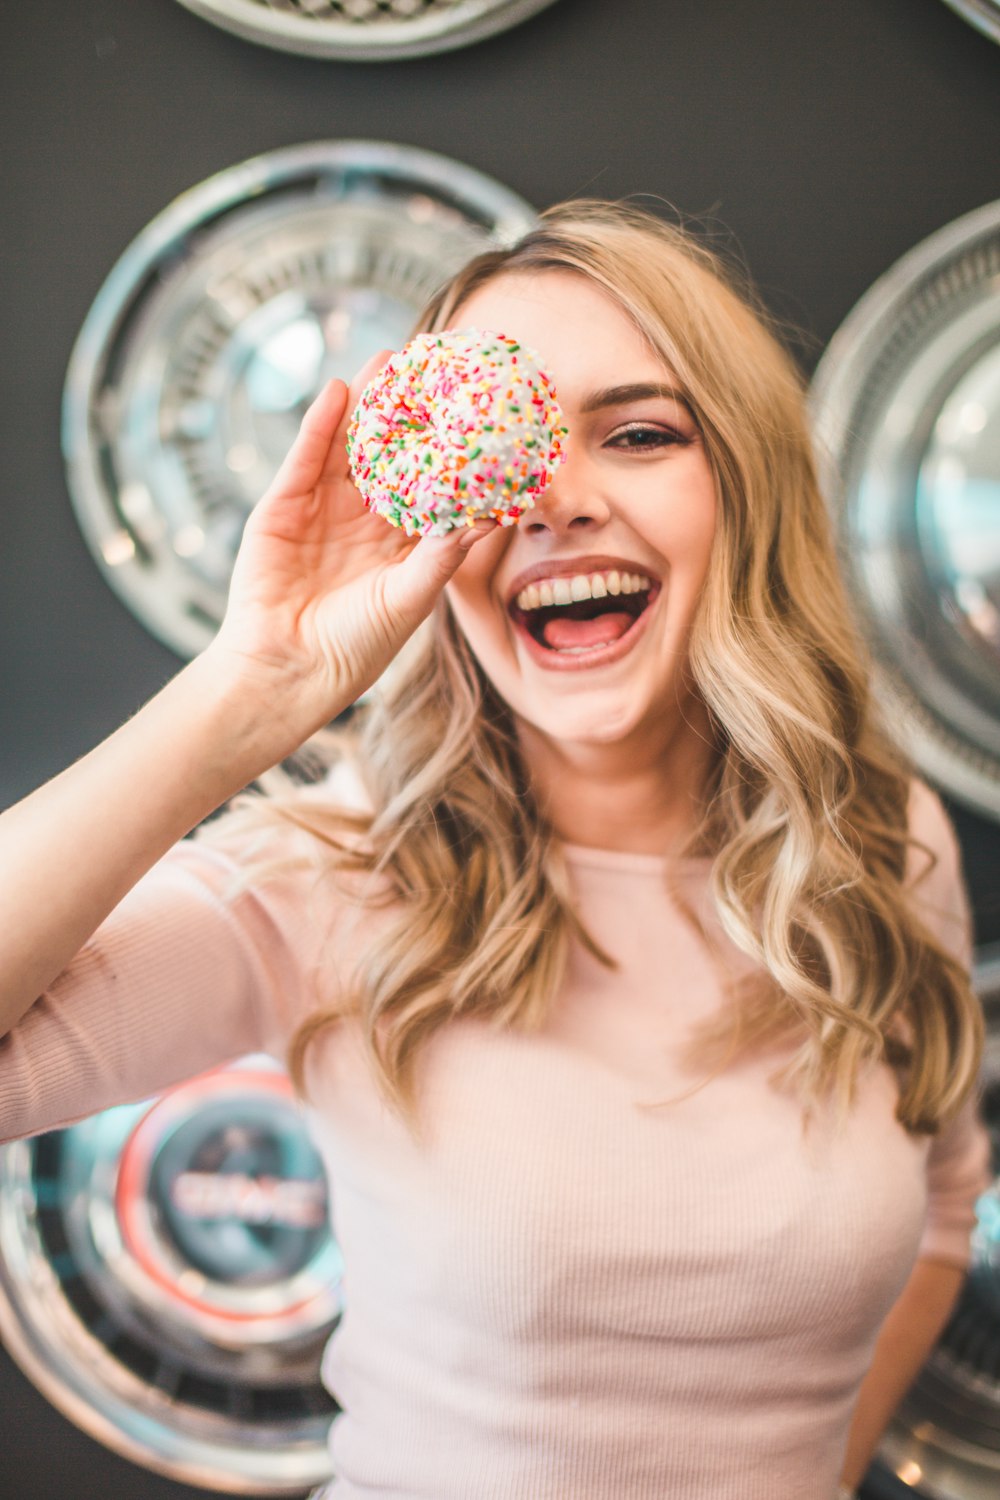 도넛을 들고 있는 여자의 얕은 초점 사진